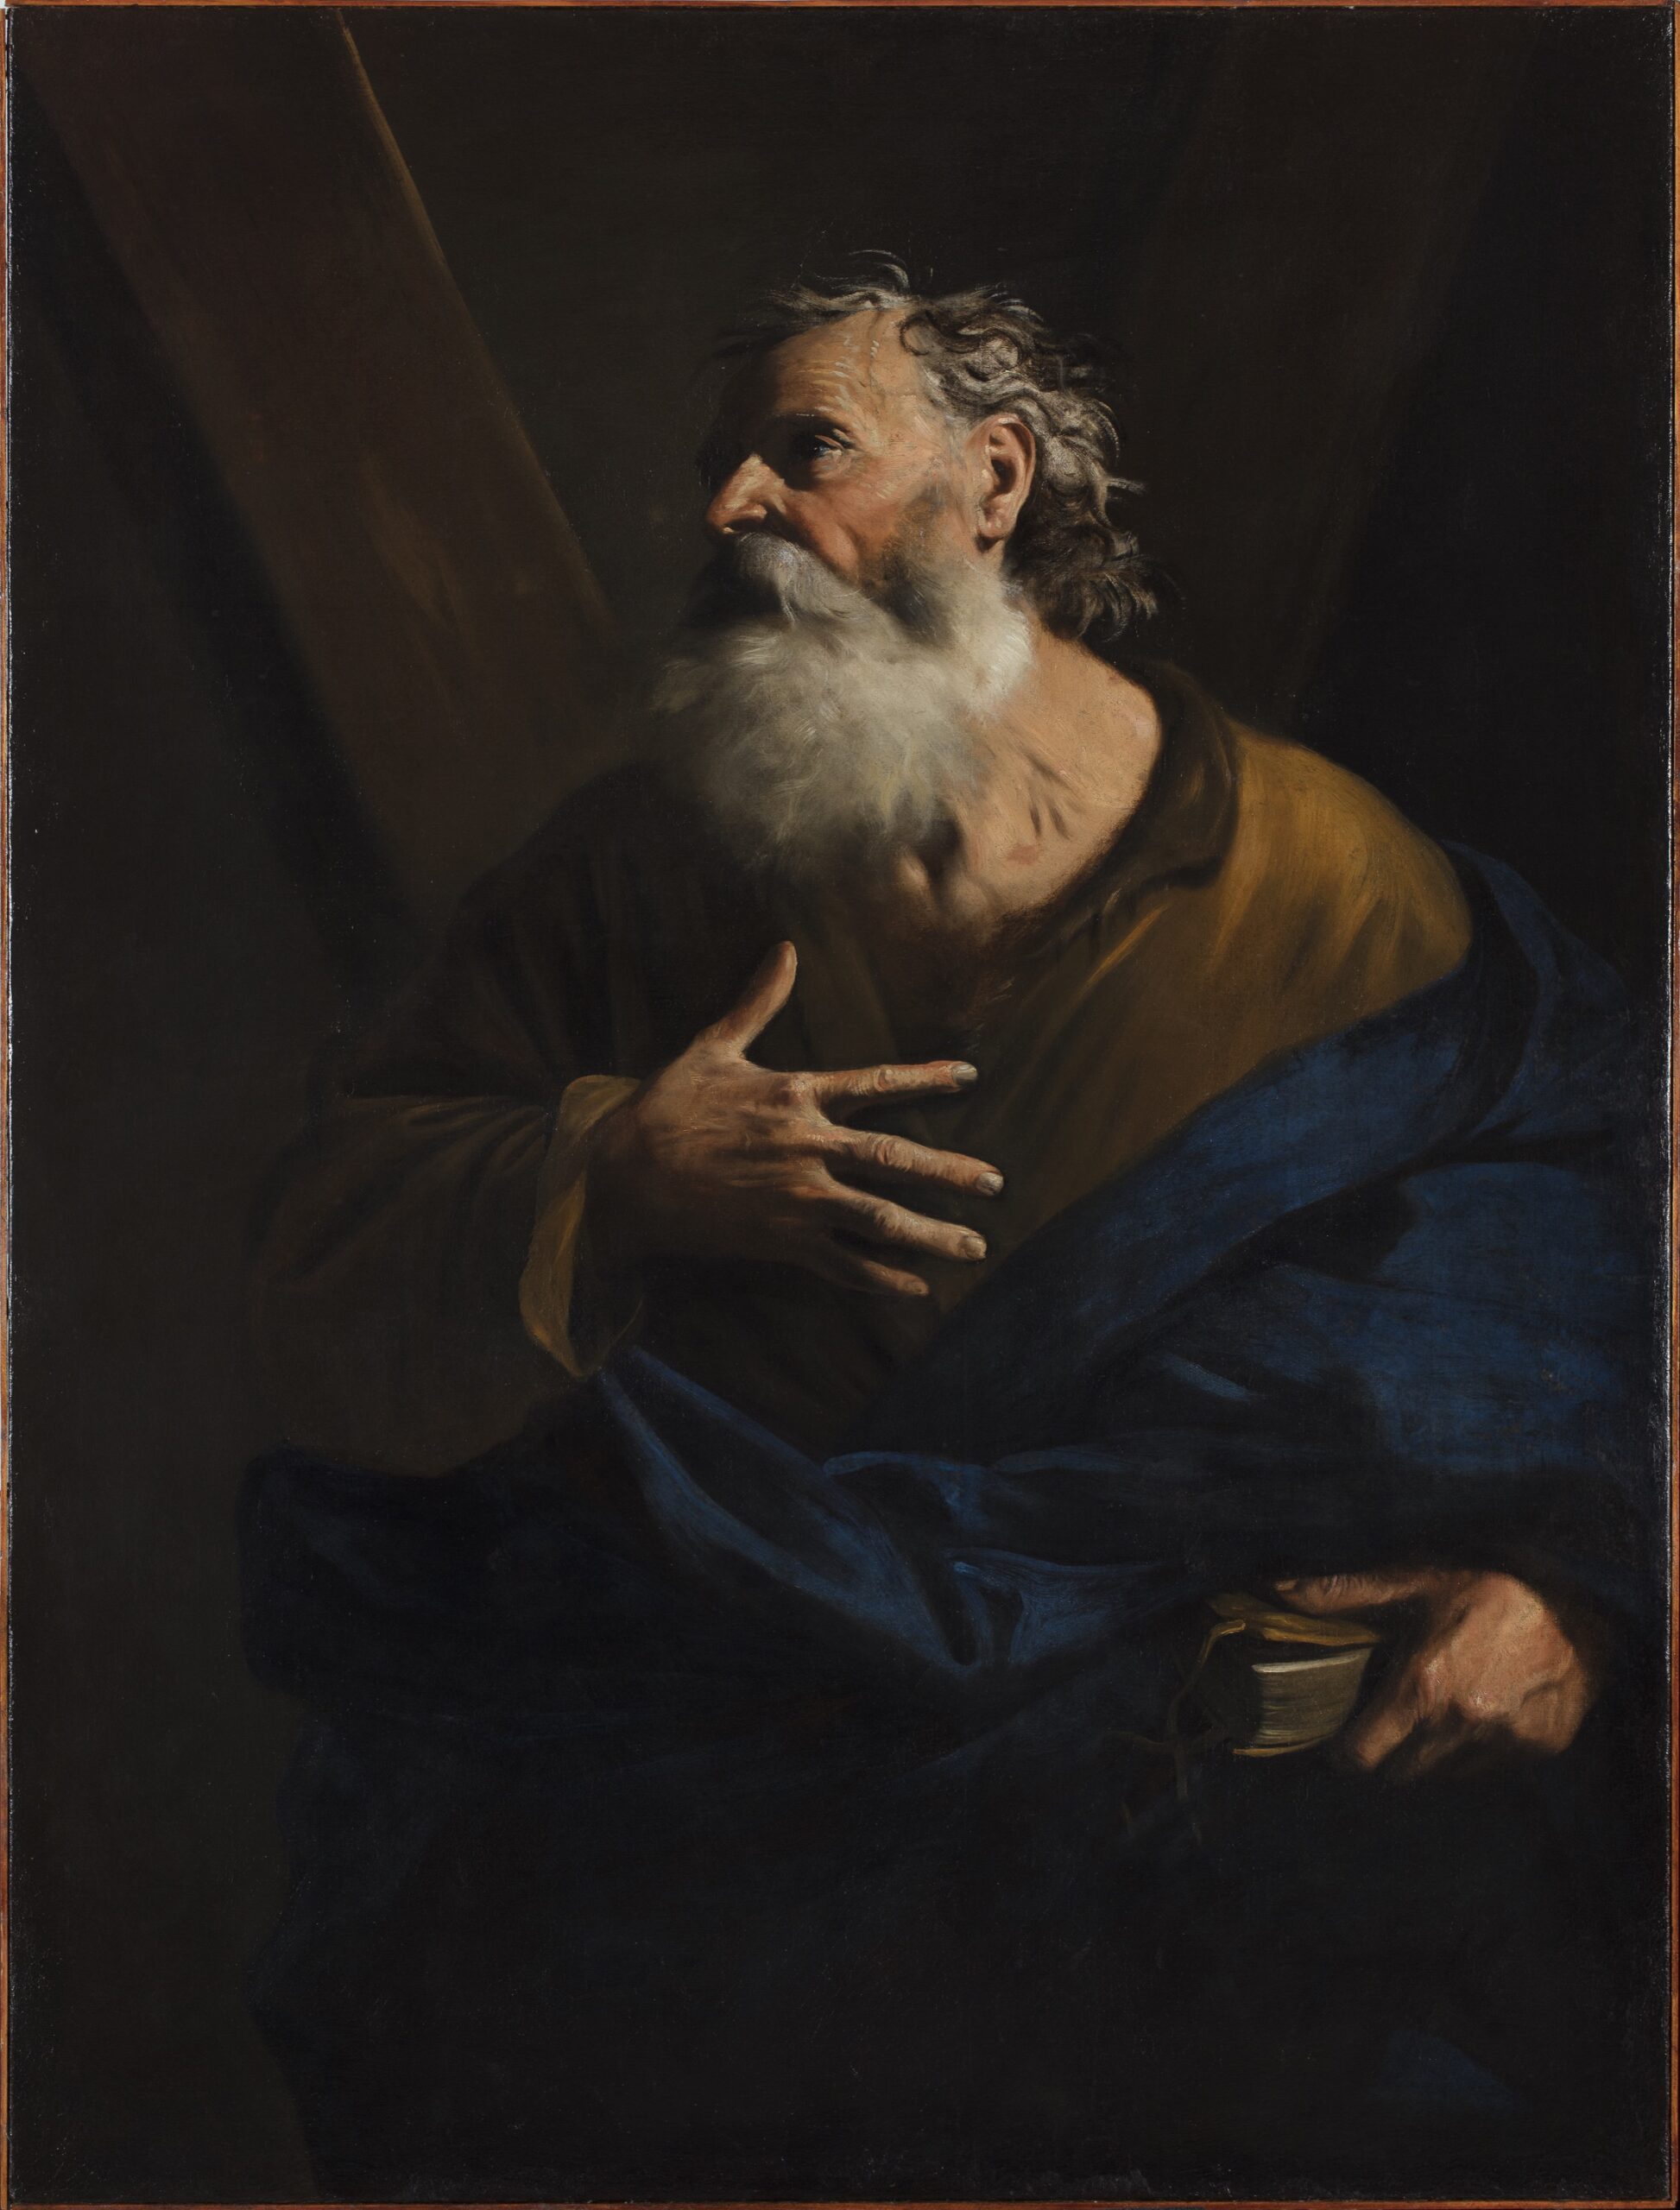 Pier Francesco Mola (1612-1666), Saint André, vers 1650. Huile sur toile, 157,2 x 119,5 cm. Prix : 550 000 euros. Galerie Canesso, Paris.